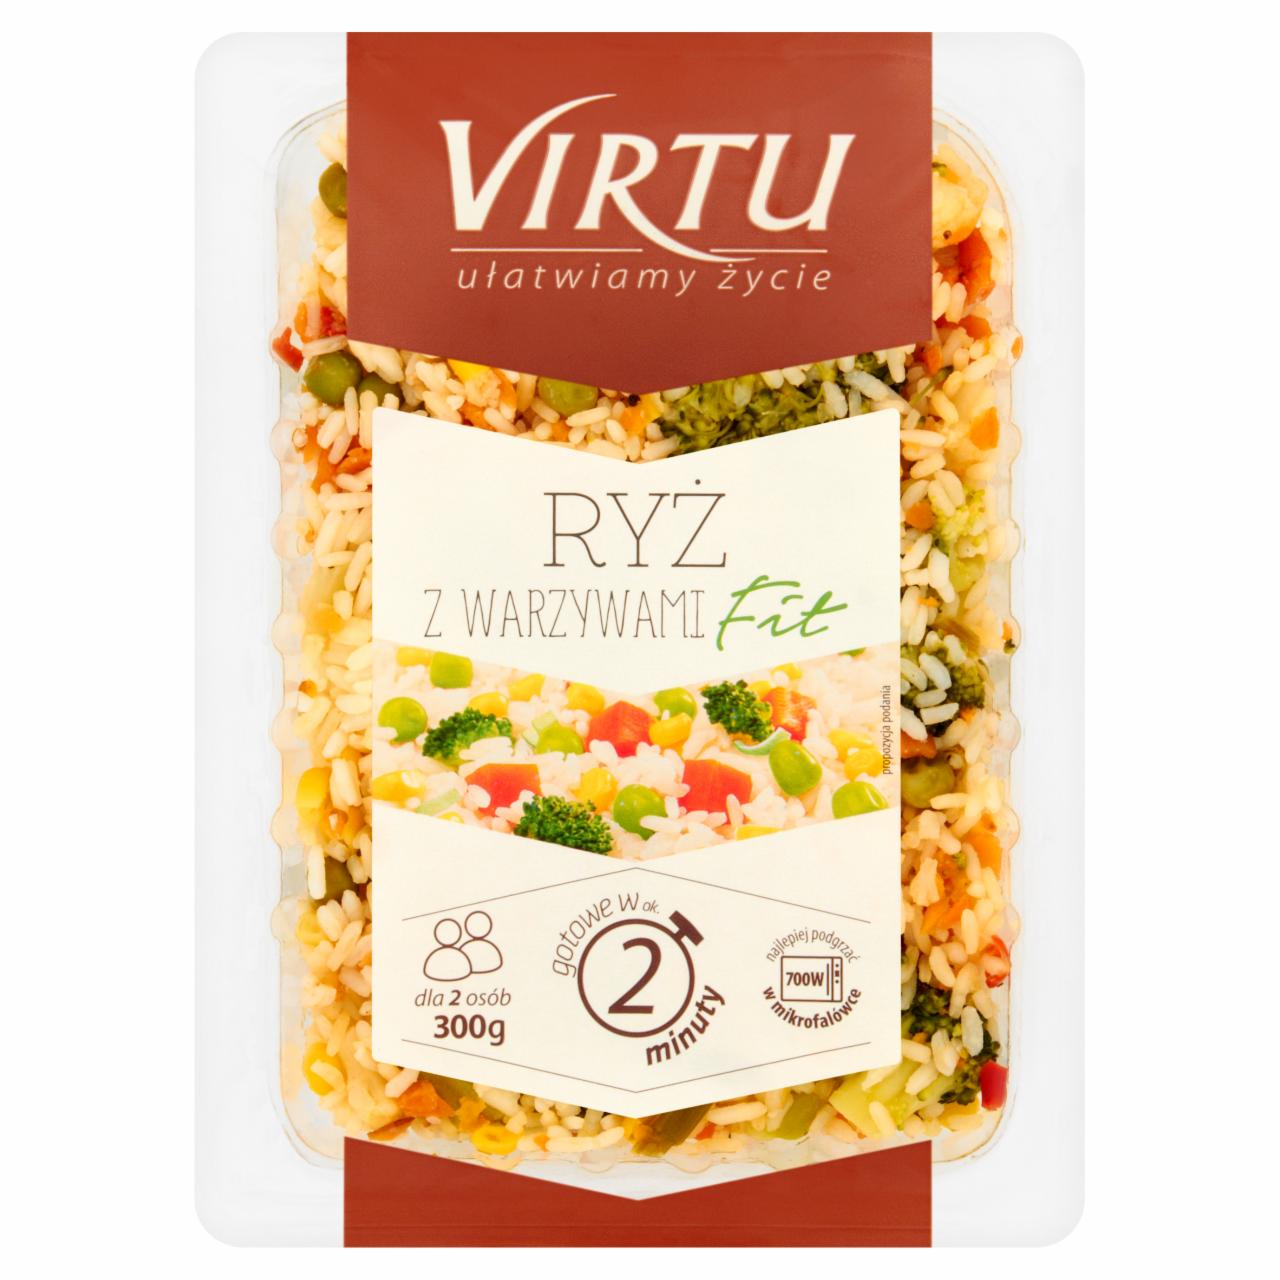 Zdjęcia - Virtu Ryż z warzywami fit 300 g